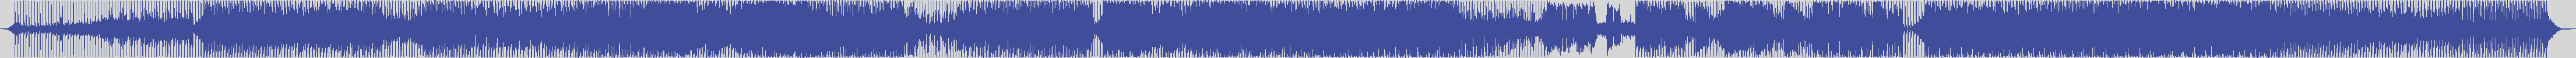 definitiva [DEF011] De - Javu - Never [Piparo's Main Mix] audio wave form